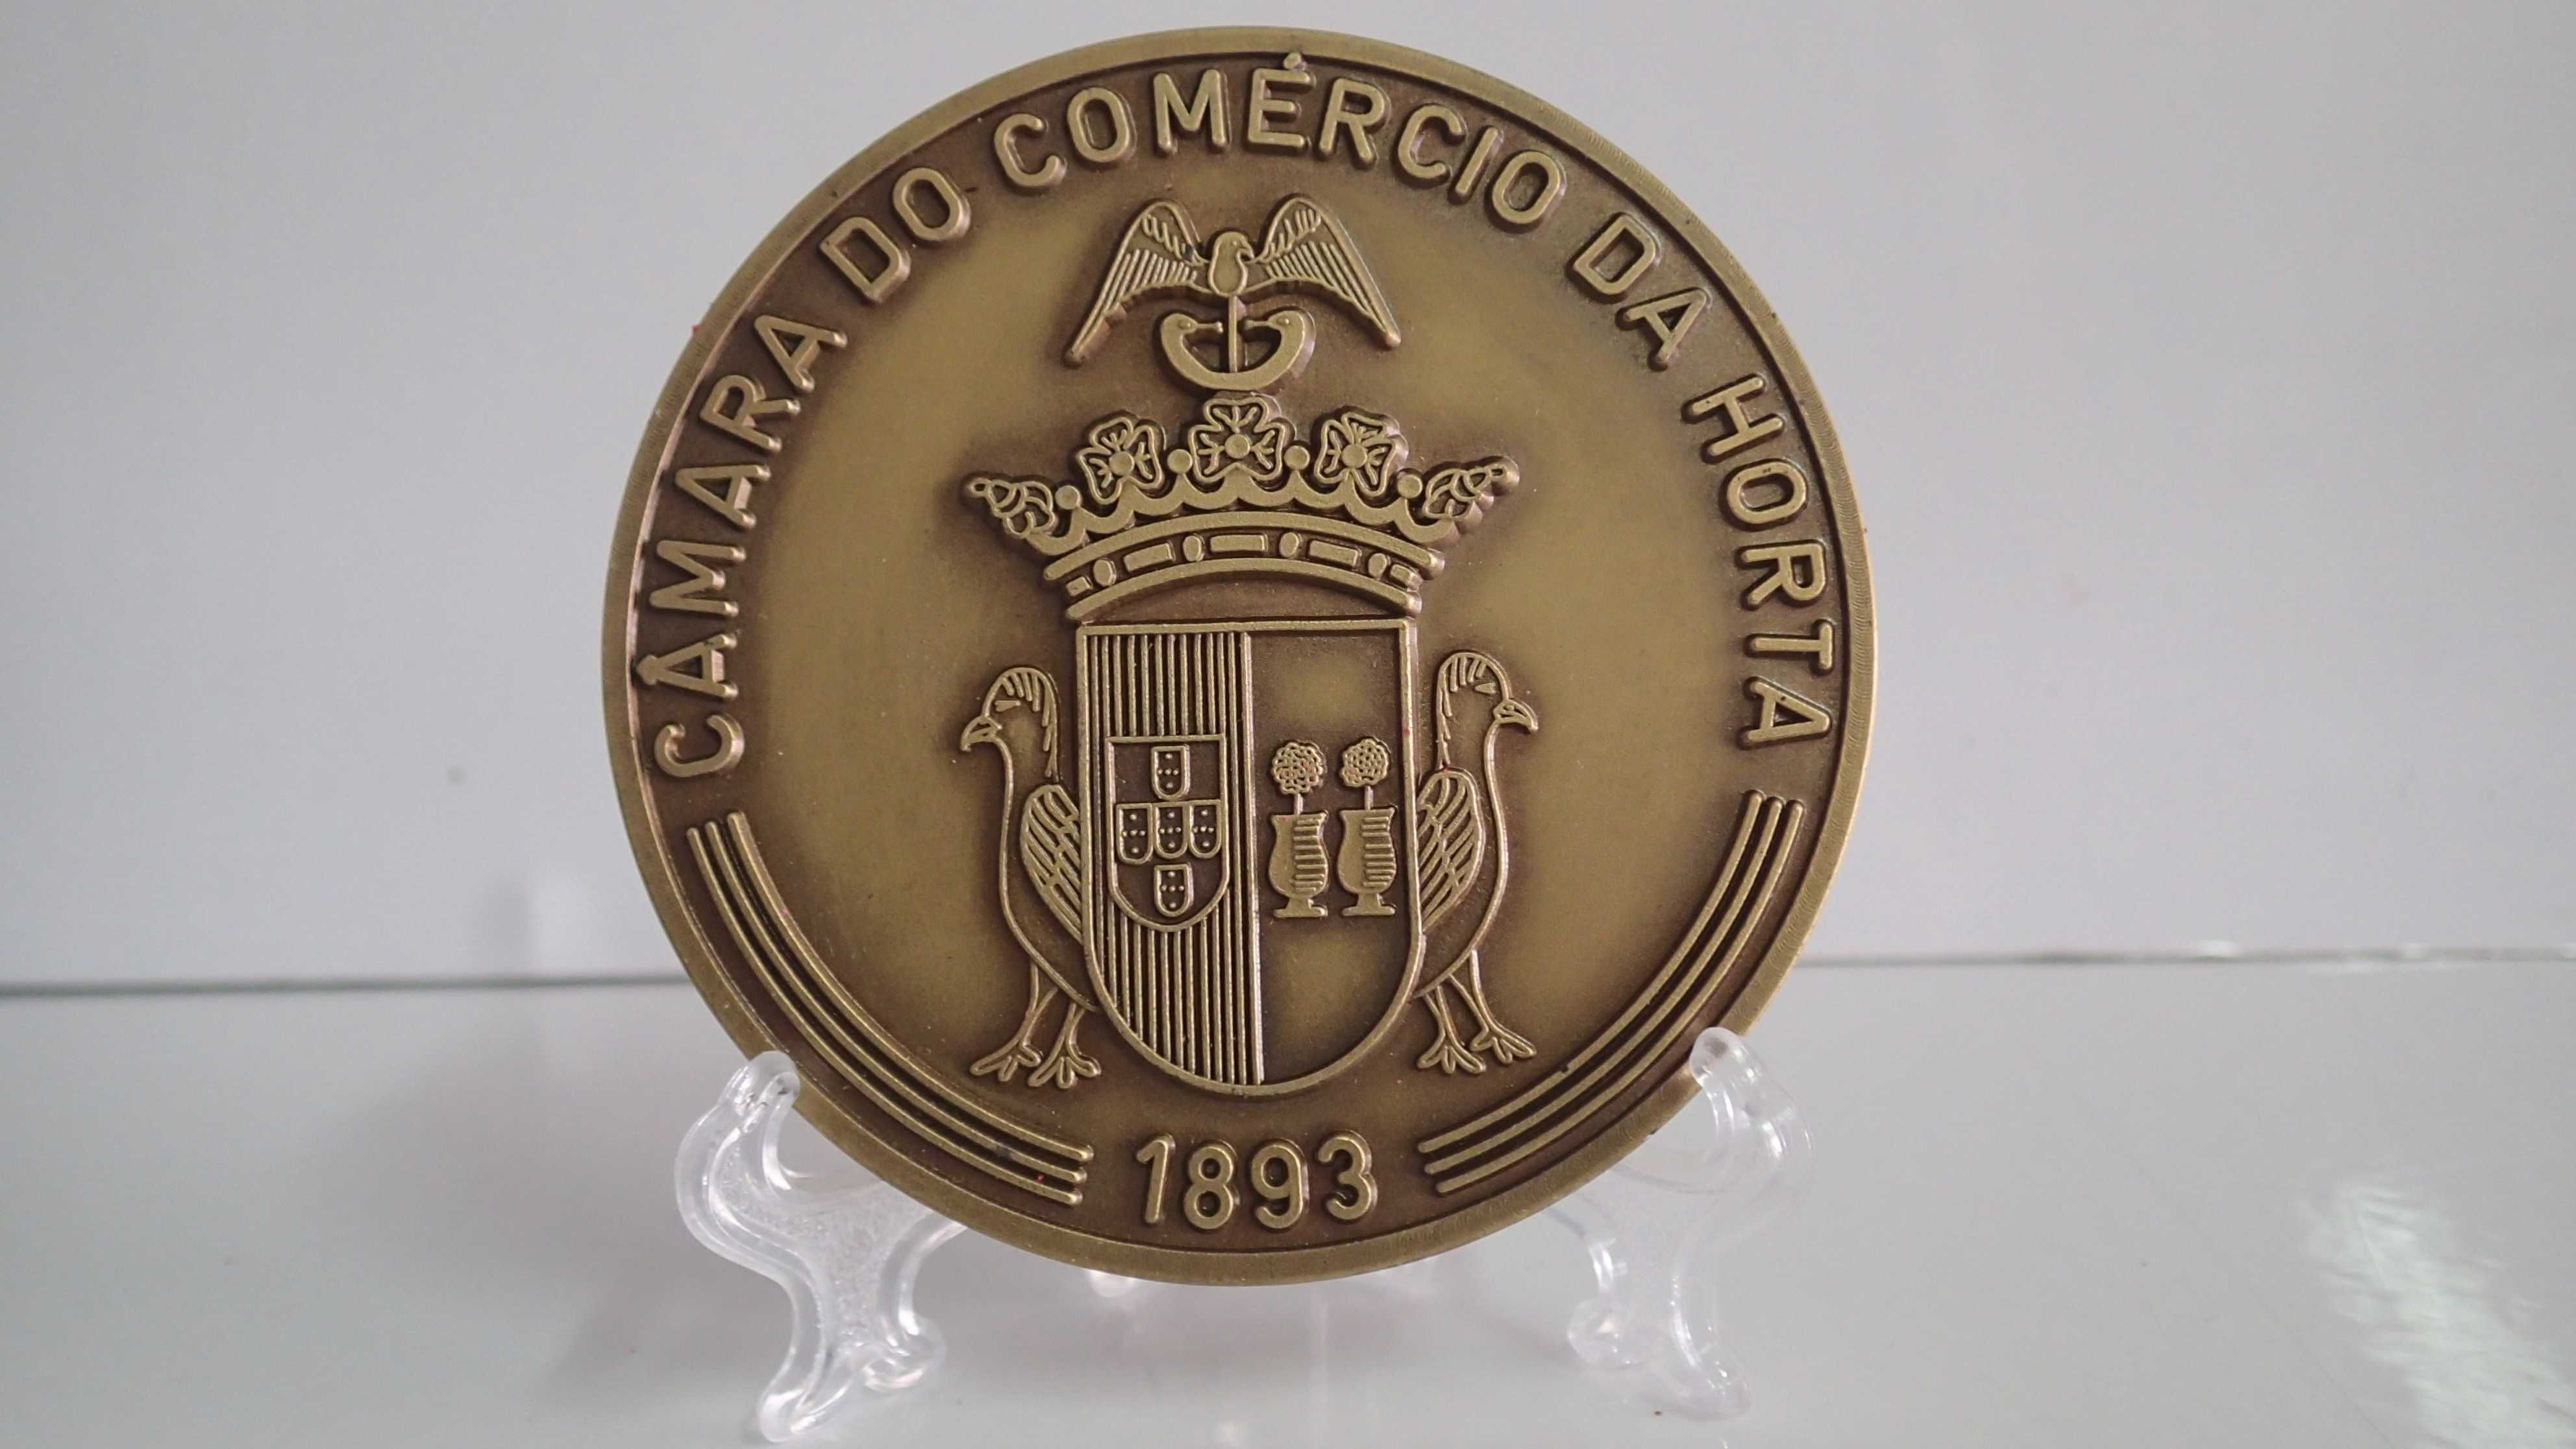 Medalha em bronze da Câmara do Comércio da Horta